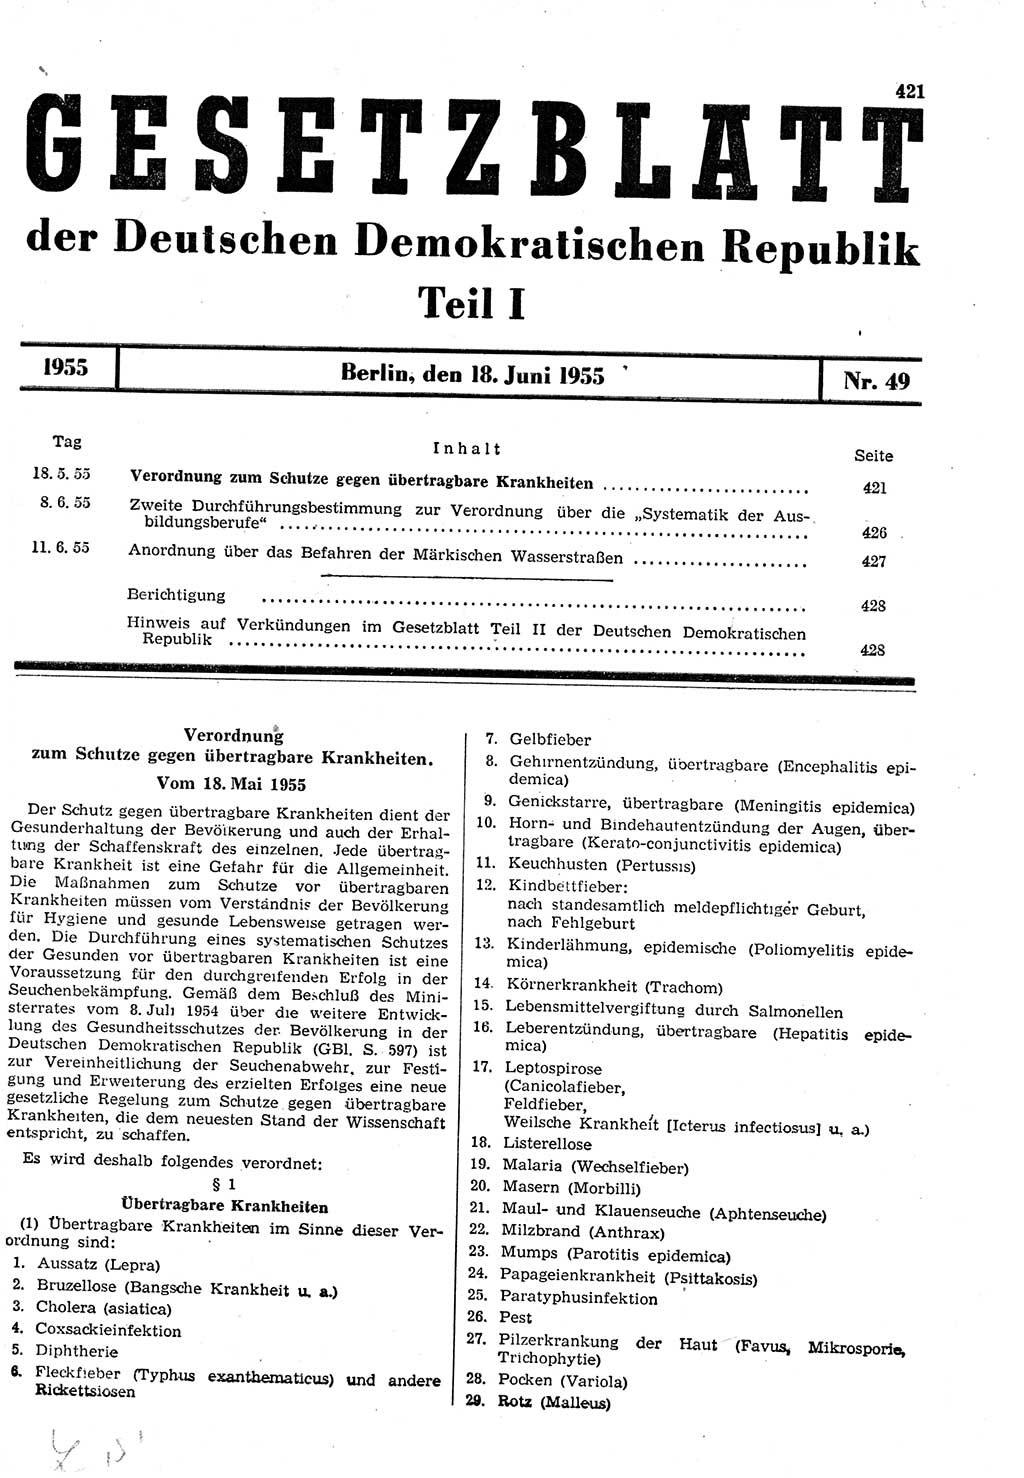 Gesetzblatt (GBl.) der Deutschen Demokratischen Republik (DDR) Teil Ⅰ 1955, Seite 421 (GBl. DDR Ⅰ 1955, S. 421)